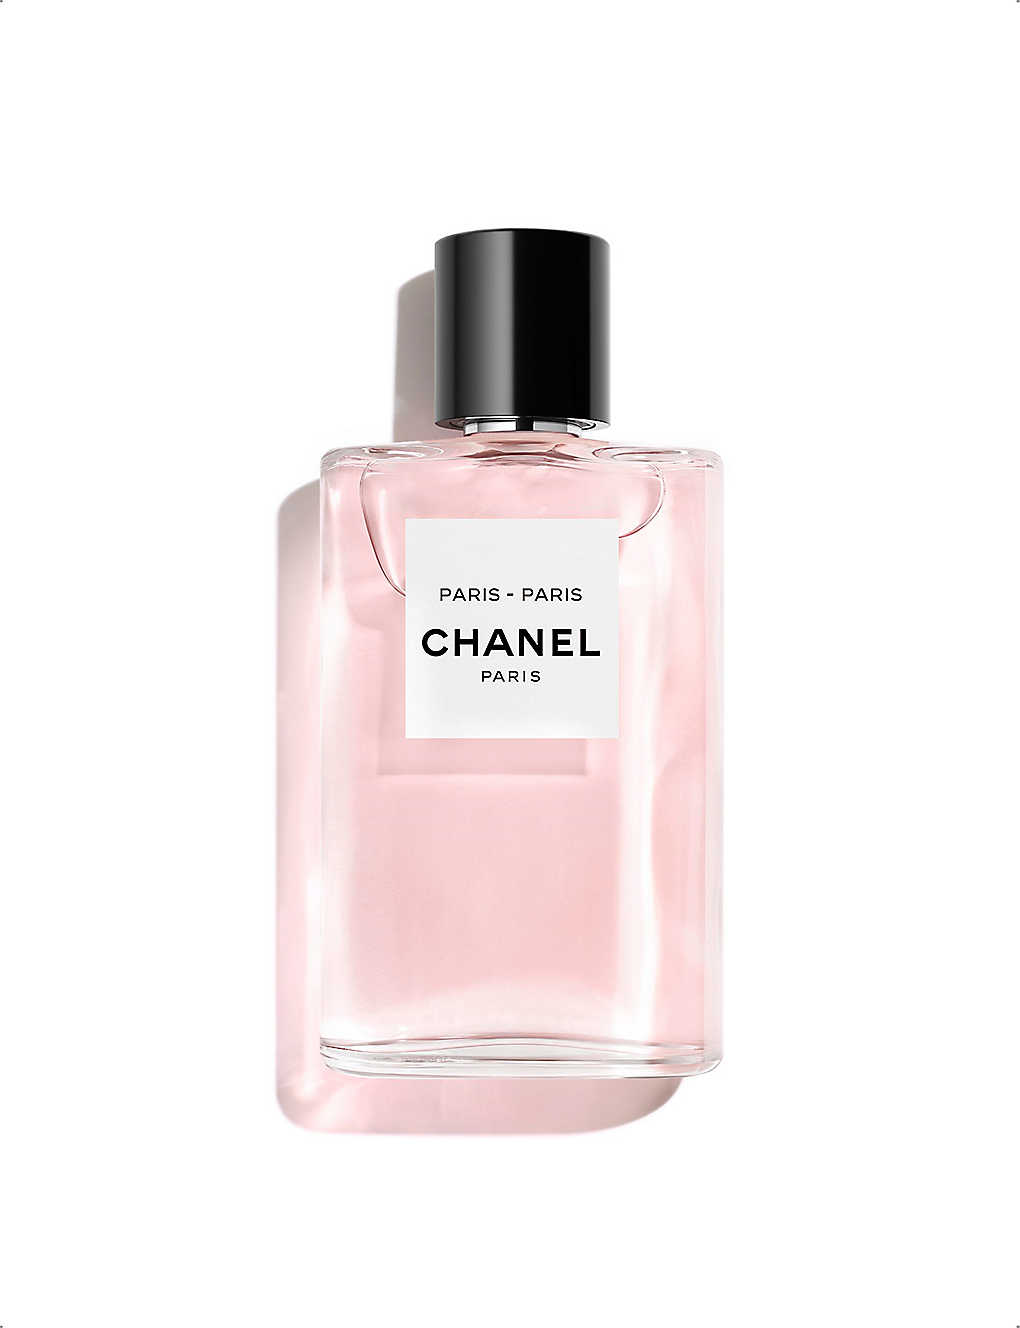 PARIS - PARIS Les Eaux De Chanel – Eau De Toilette Spray 50ml